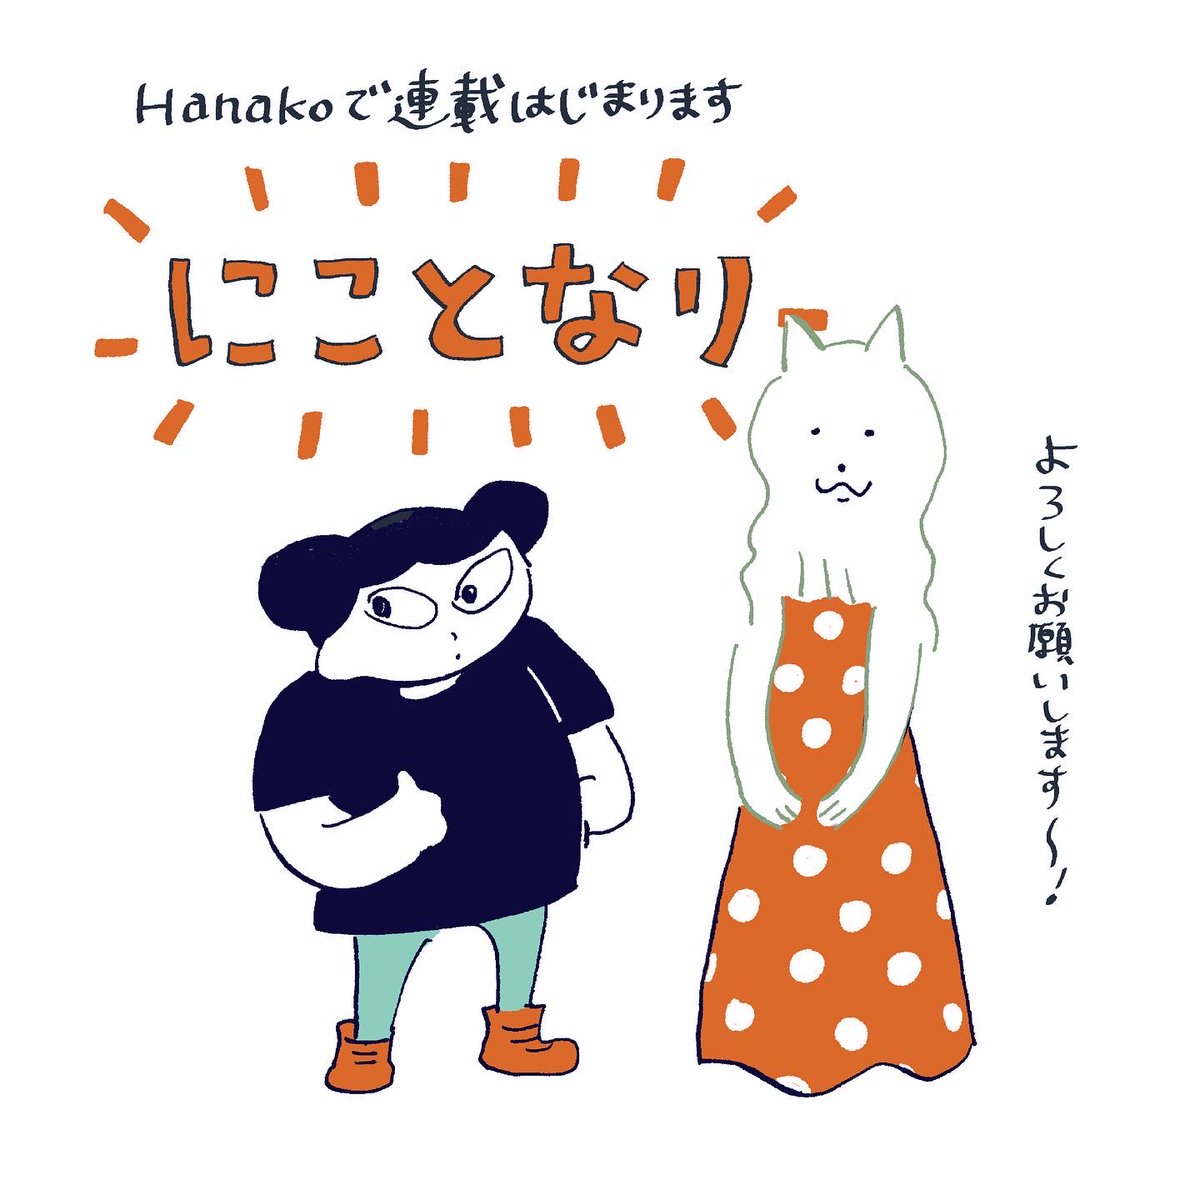 本日発売のHanakoで1ページ漫画の連載始まりました。

『にことなり』です。好きなキャラクターができて嬉しいのでぜひ読んでみてください!

今月の特集は「J SONGBOOK 日本の音楽を学ぼう!」
KinKi Kidsのおふたりが表紙です。 